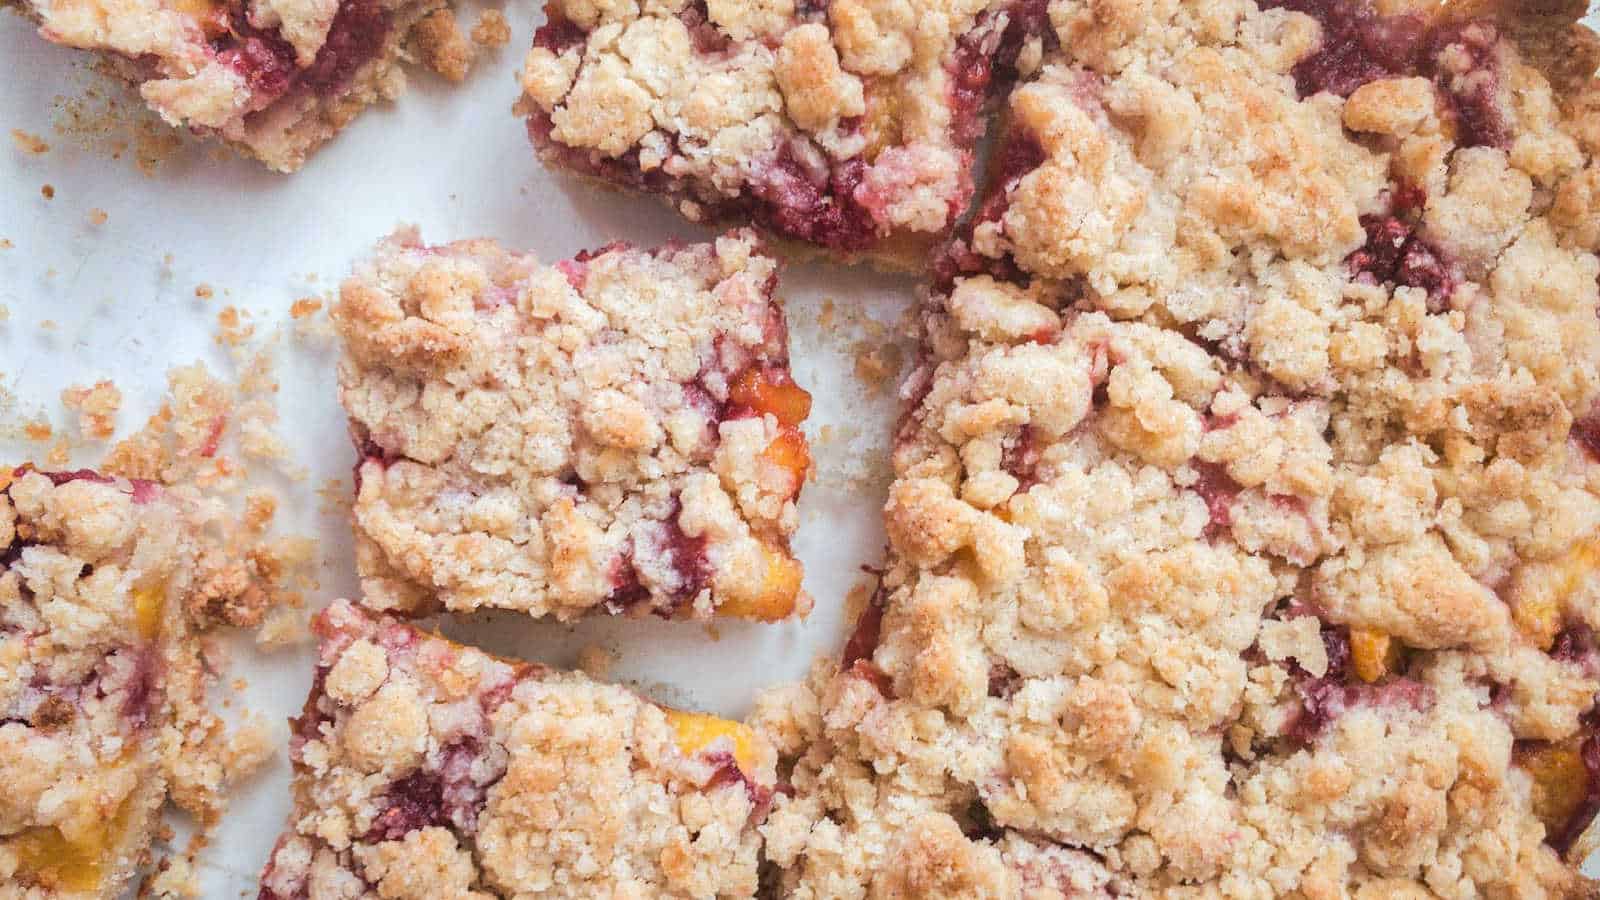 Peach raspberry bar cookies cut into squares.